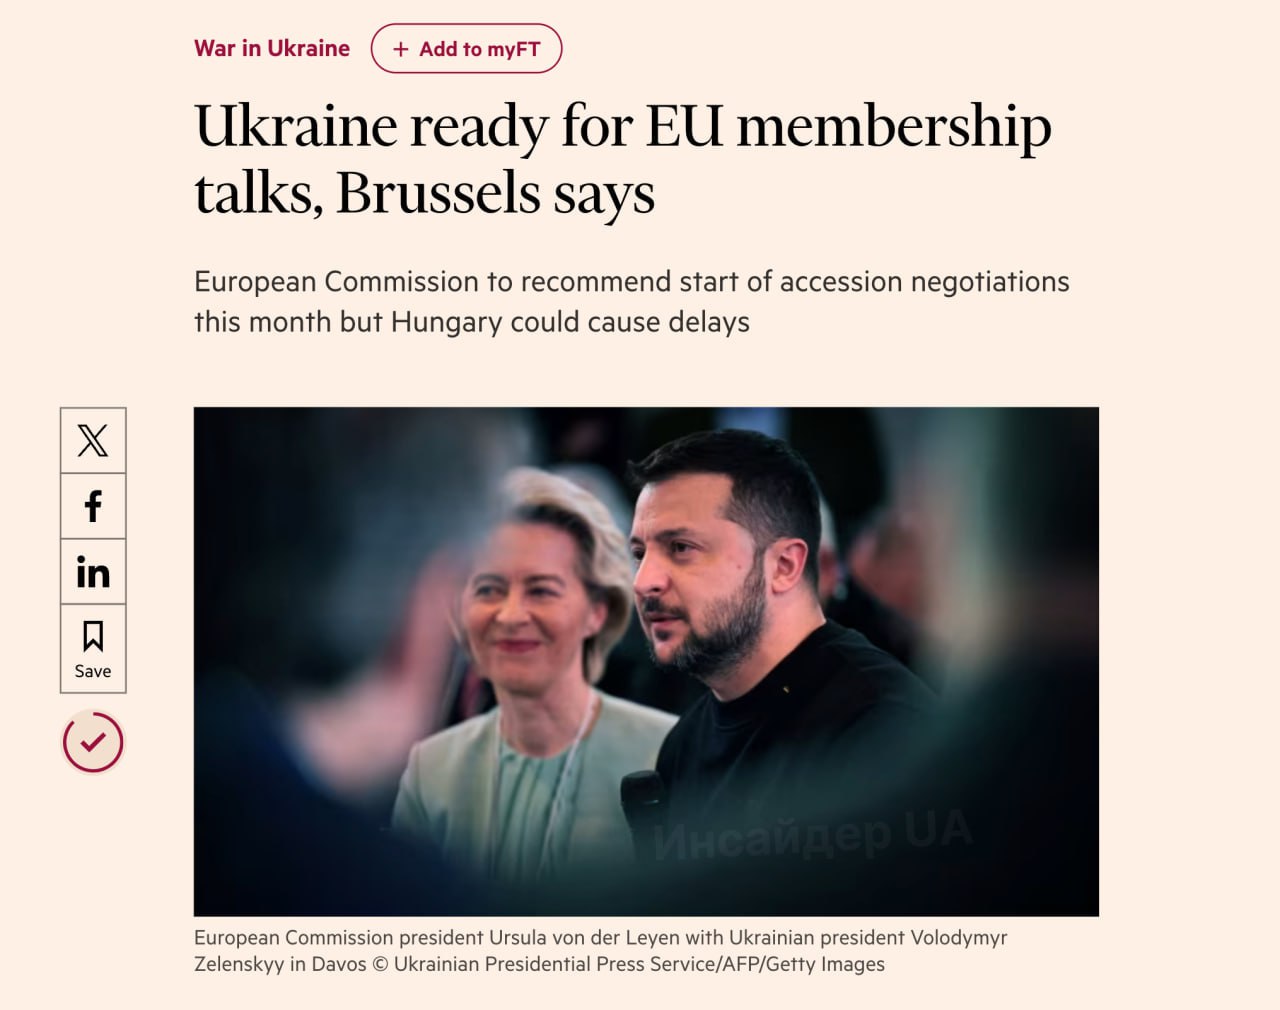 Еврокомиссия намерена рекомендовать начать в июне переговоры о вступлении Украины в Евросоюз